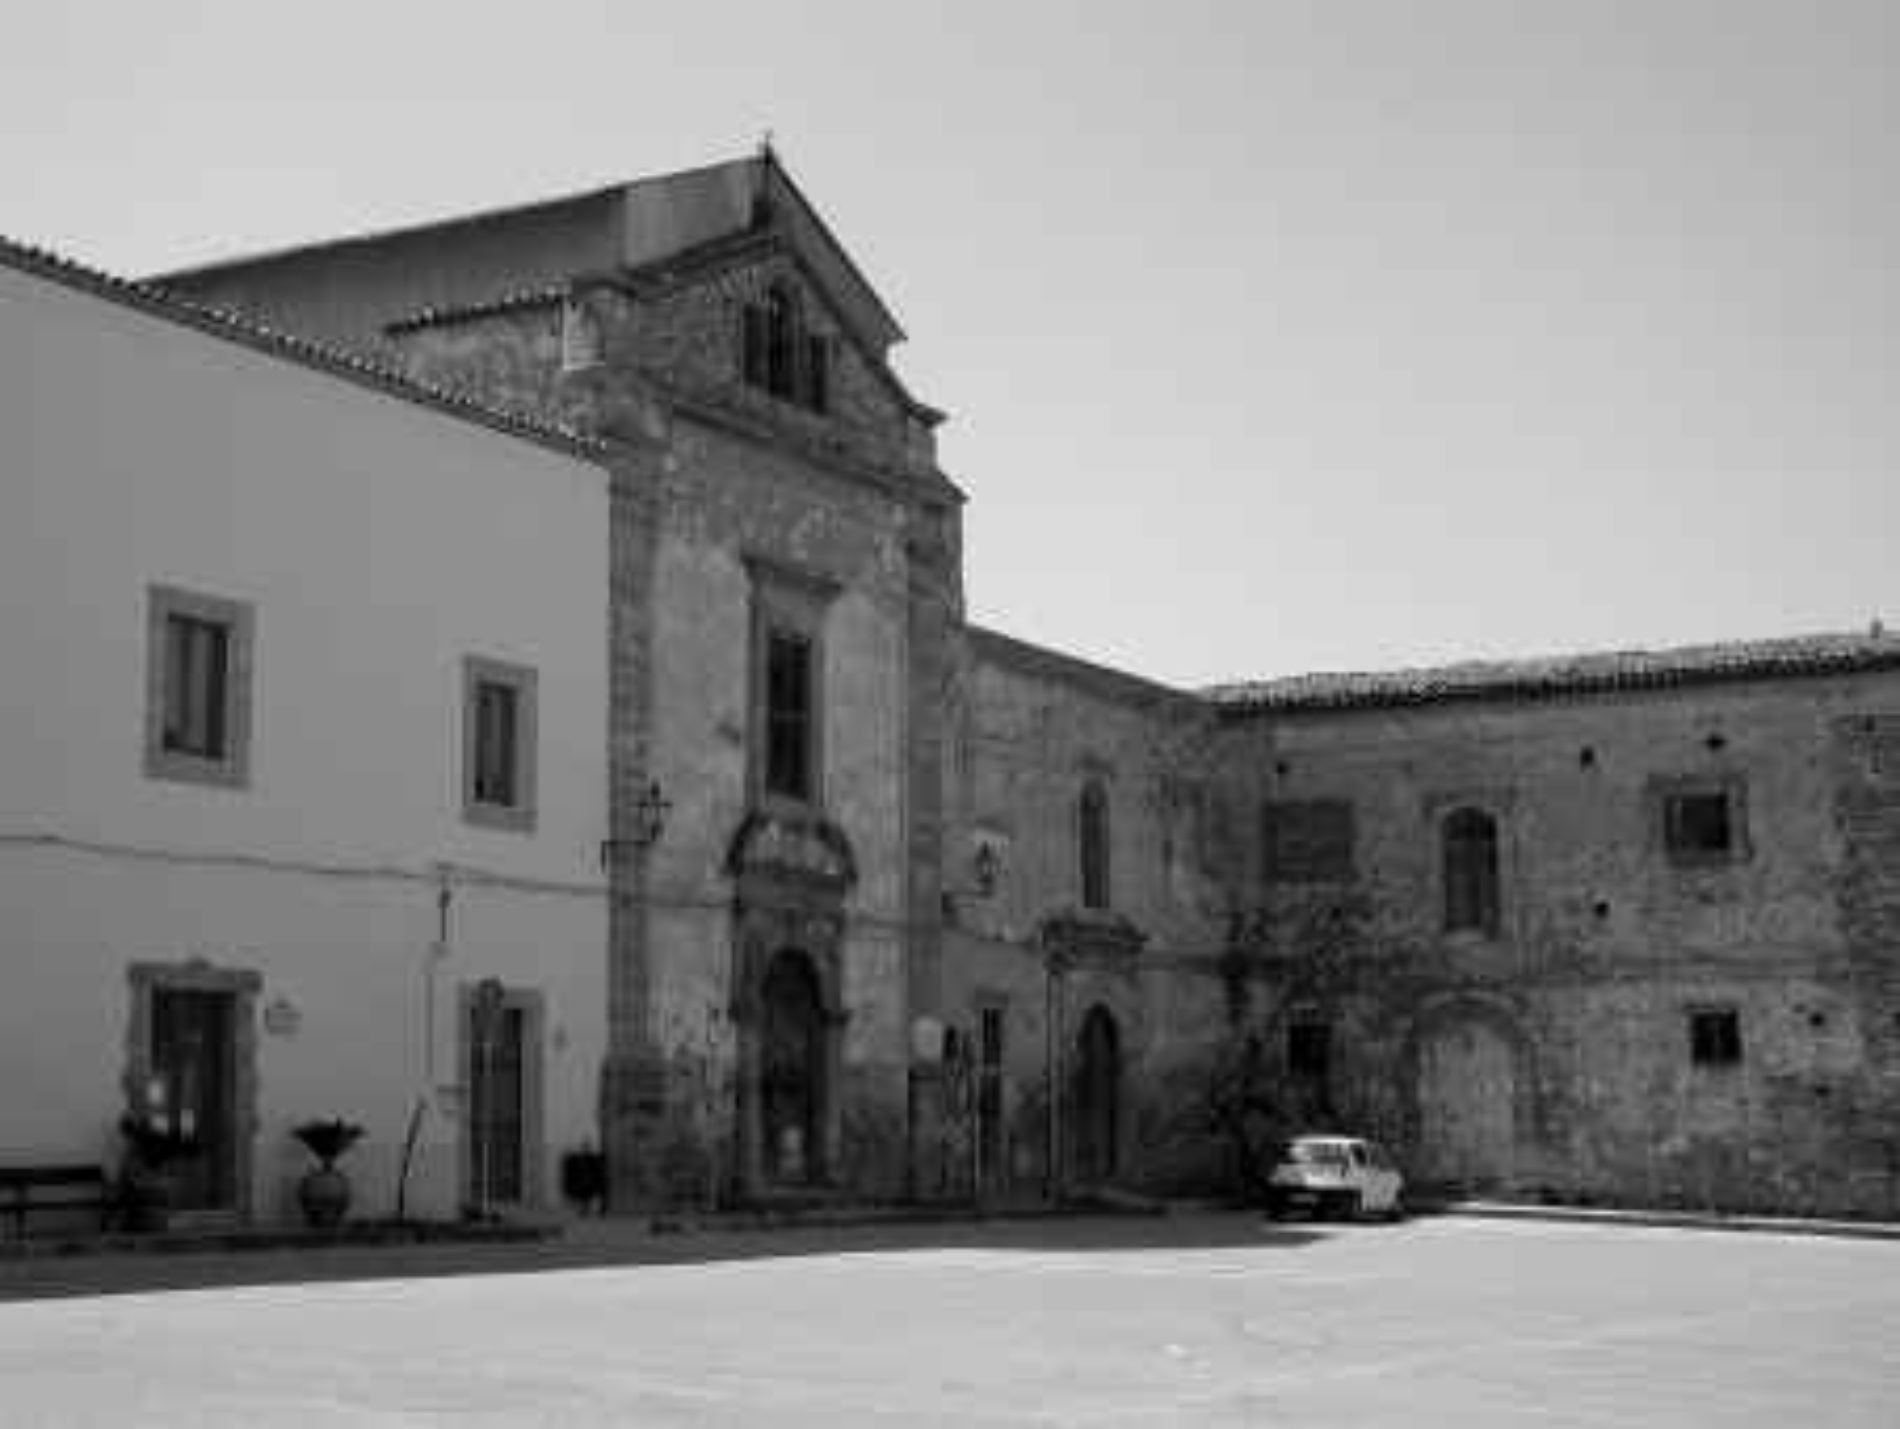 Barrafranca. Consiglio comunale aggiornato al 28 gennaio si terrà nella sala Mons. Cravotta